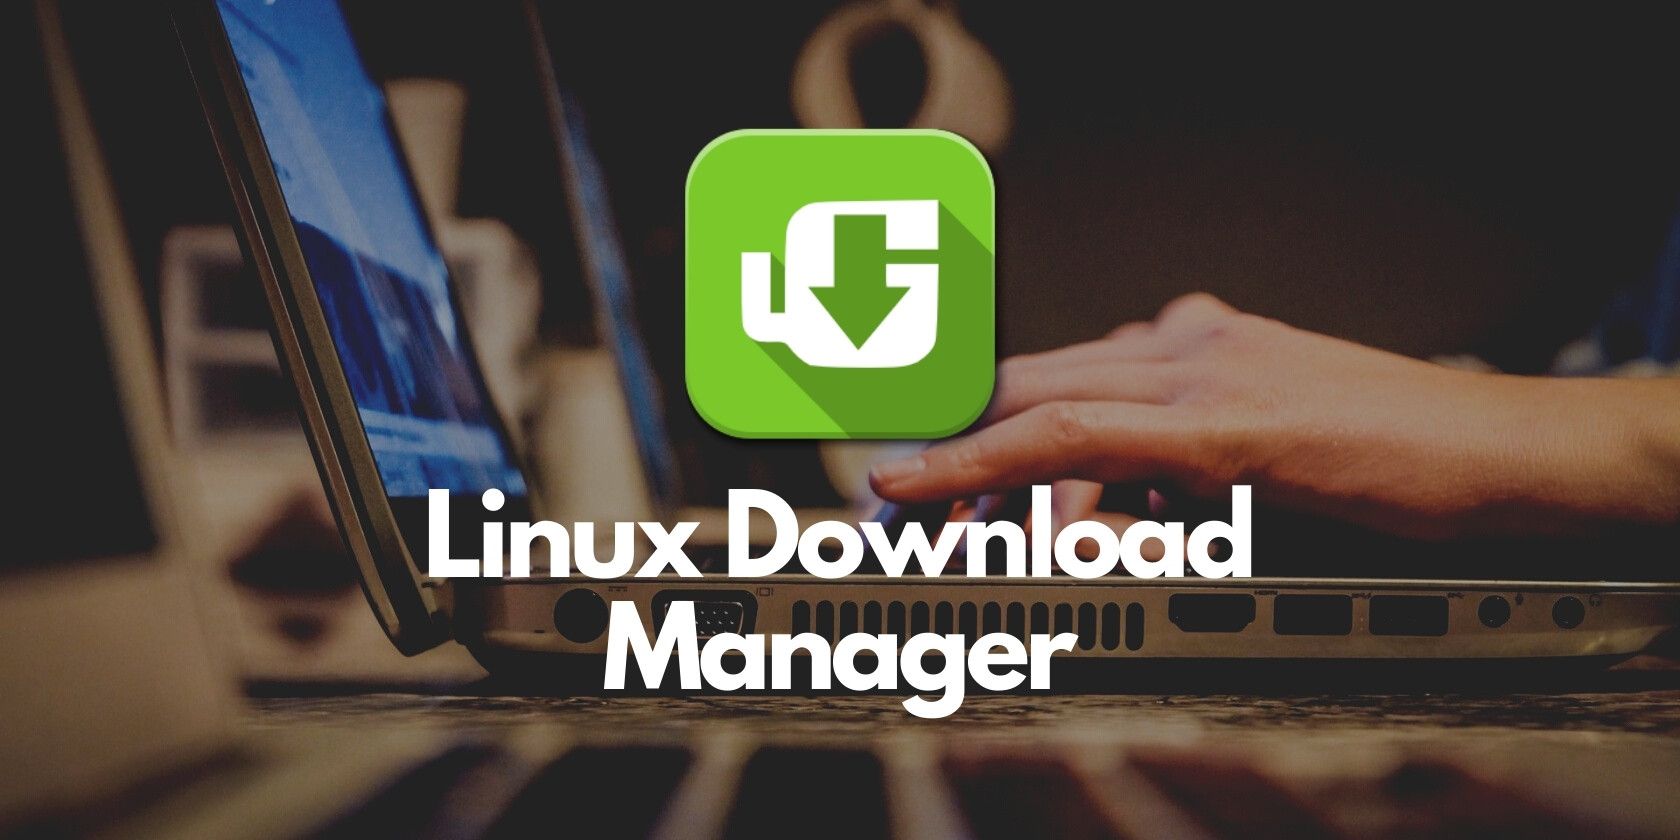 uGet Linux download manager